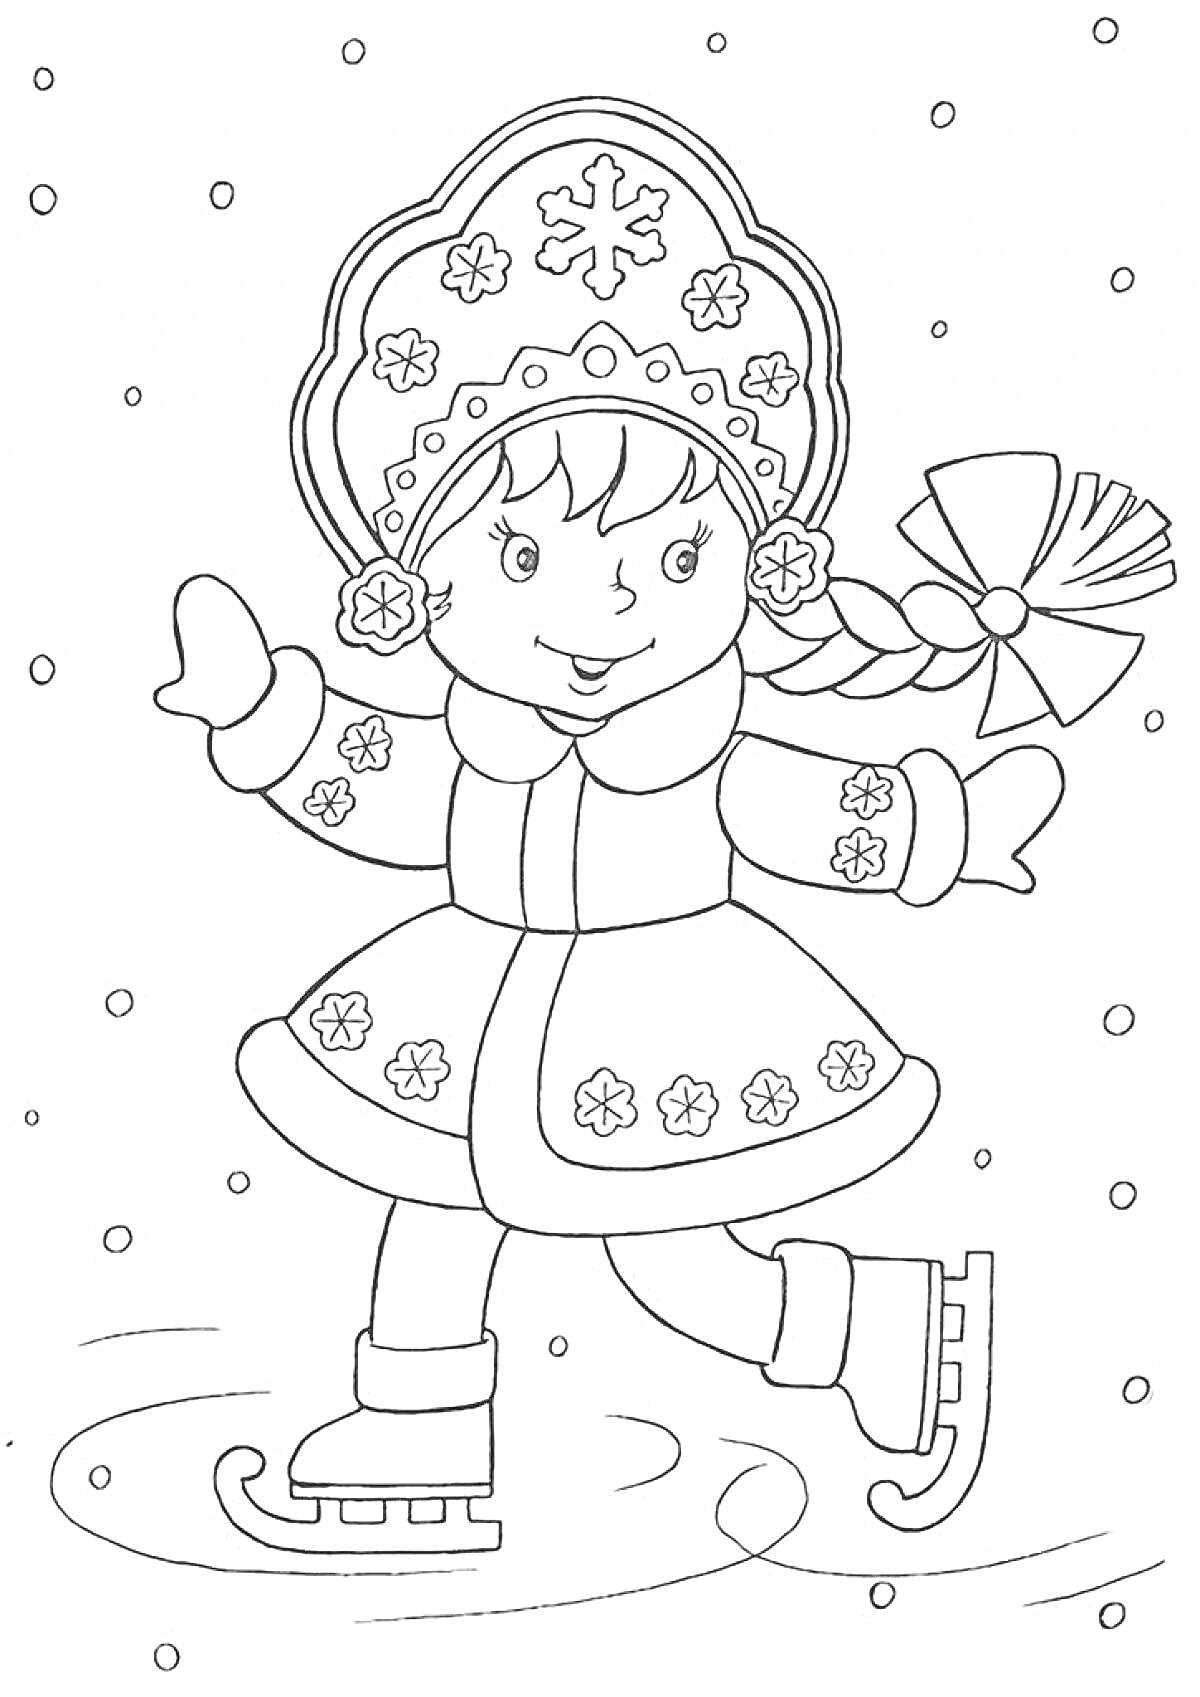 Раскраска Девочка-фигуристка в шапке с узором на льду в снежный день